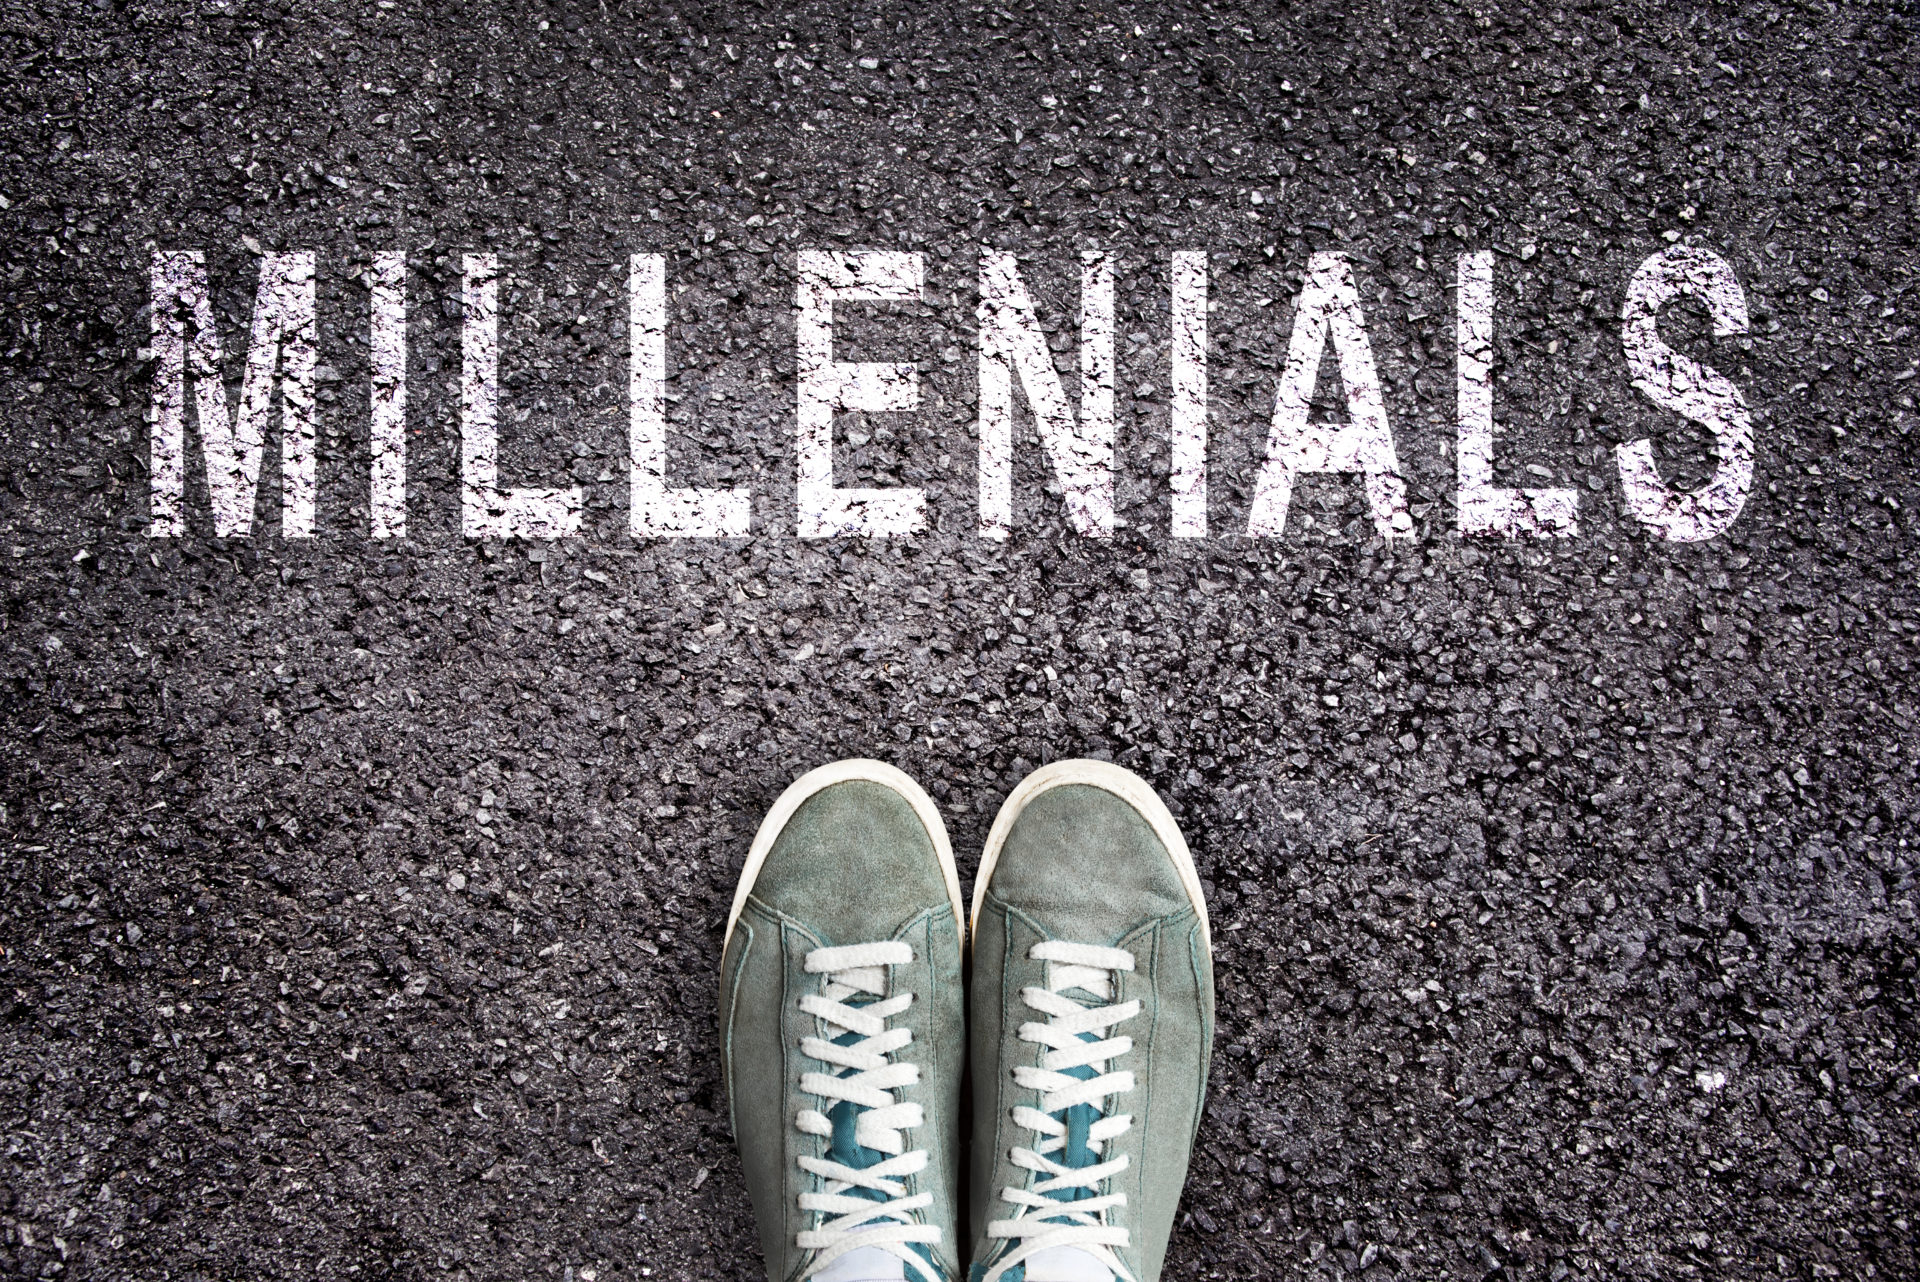 Top Five Tips for Recruiting Millennials